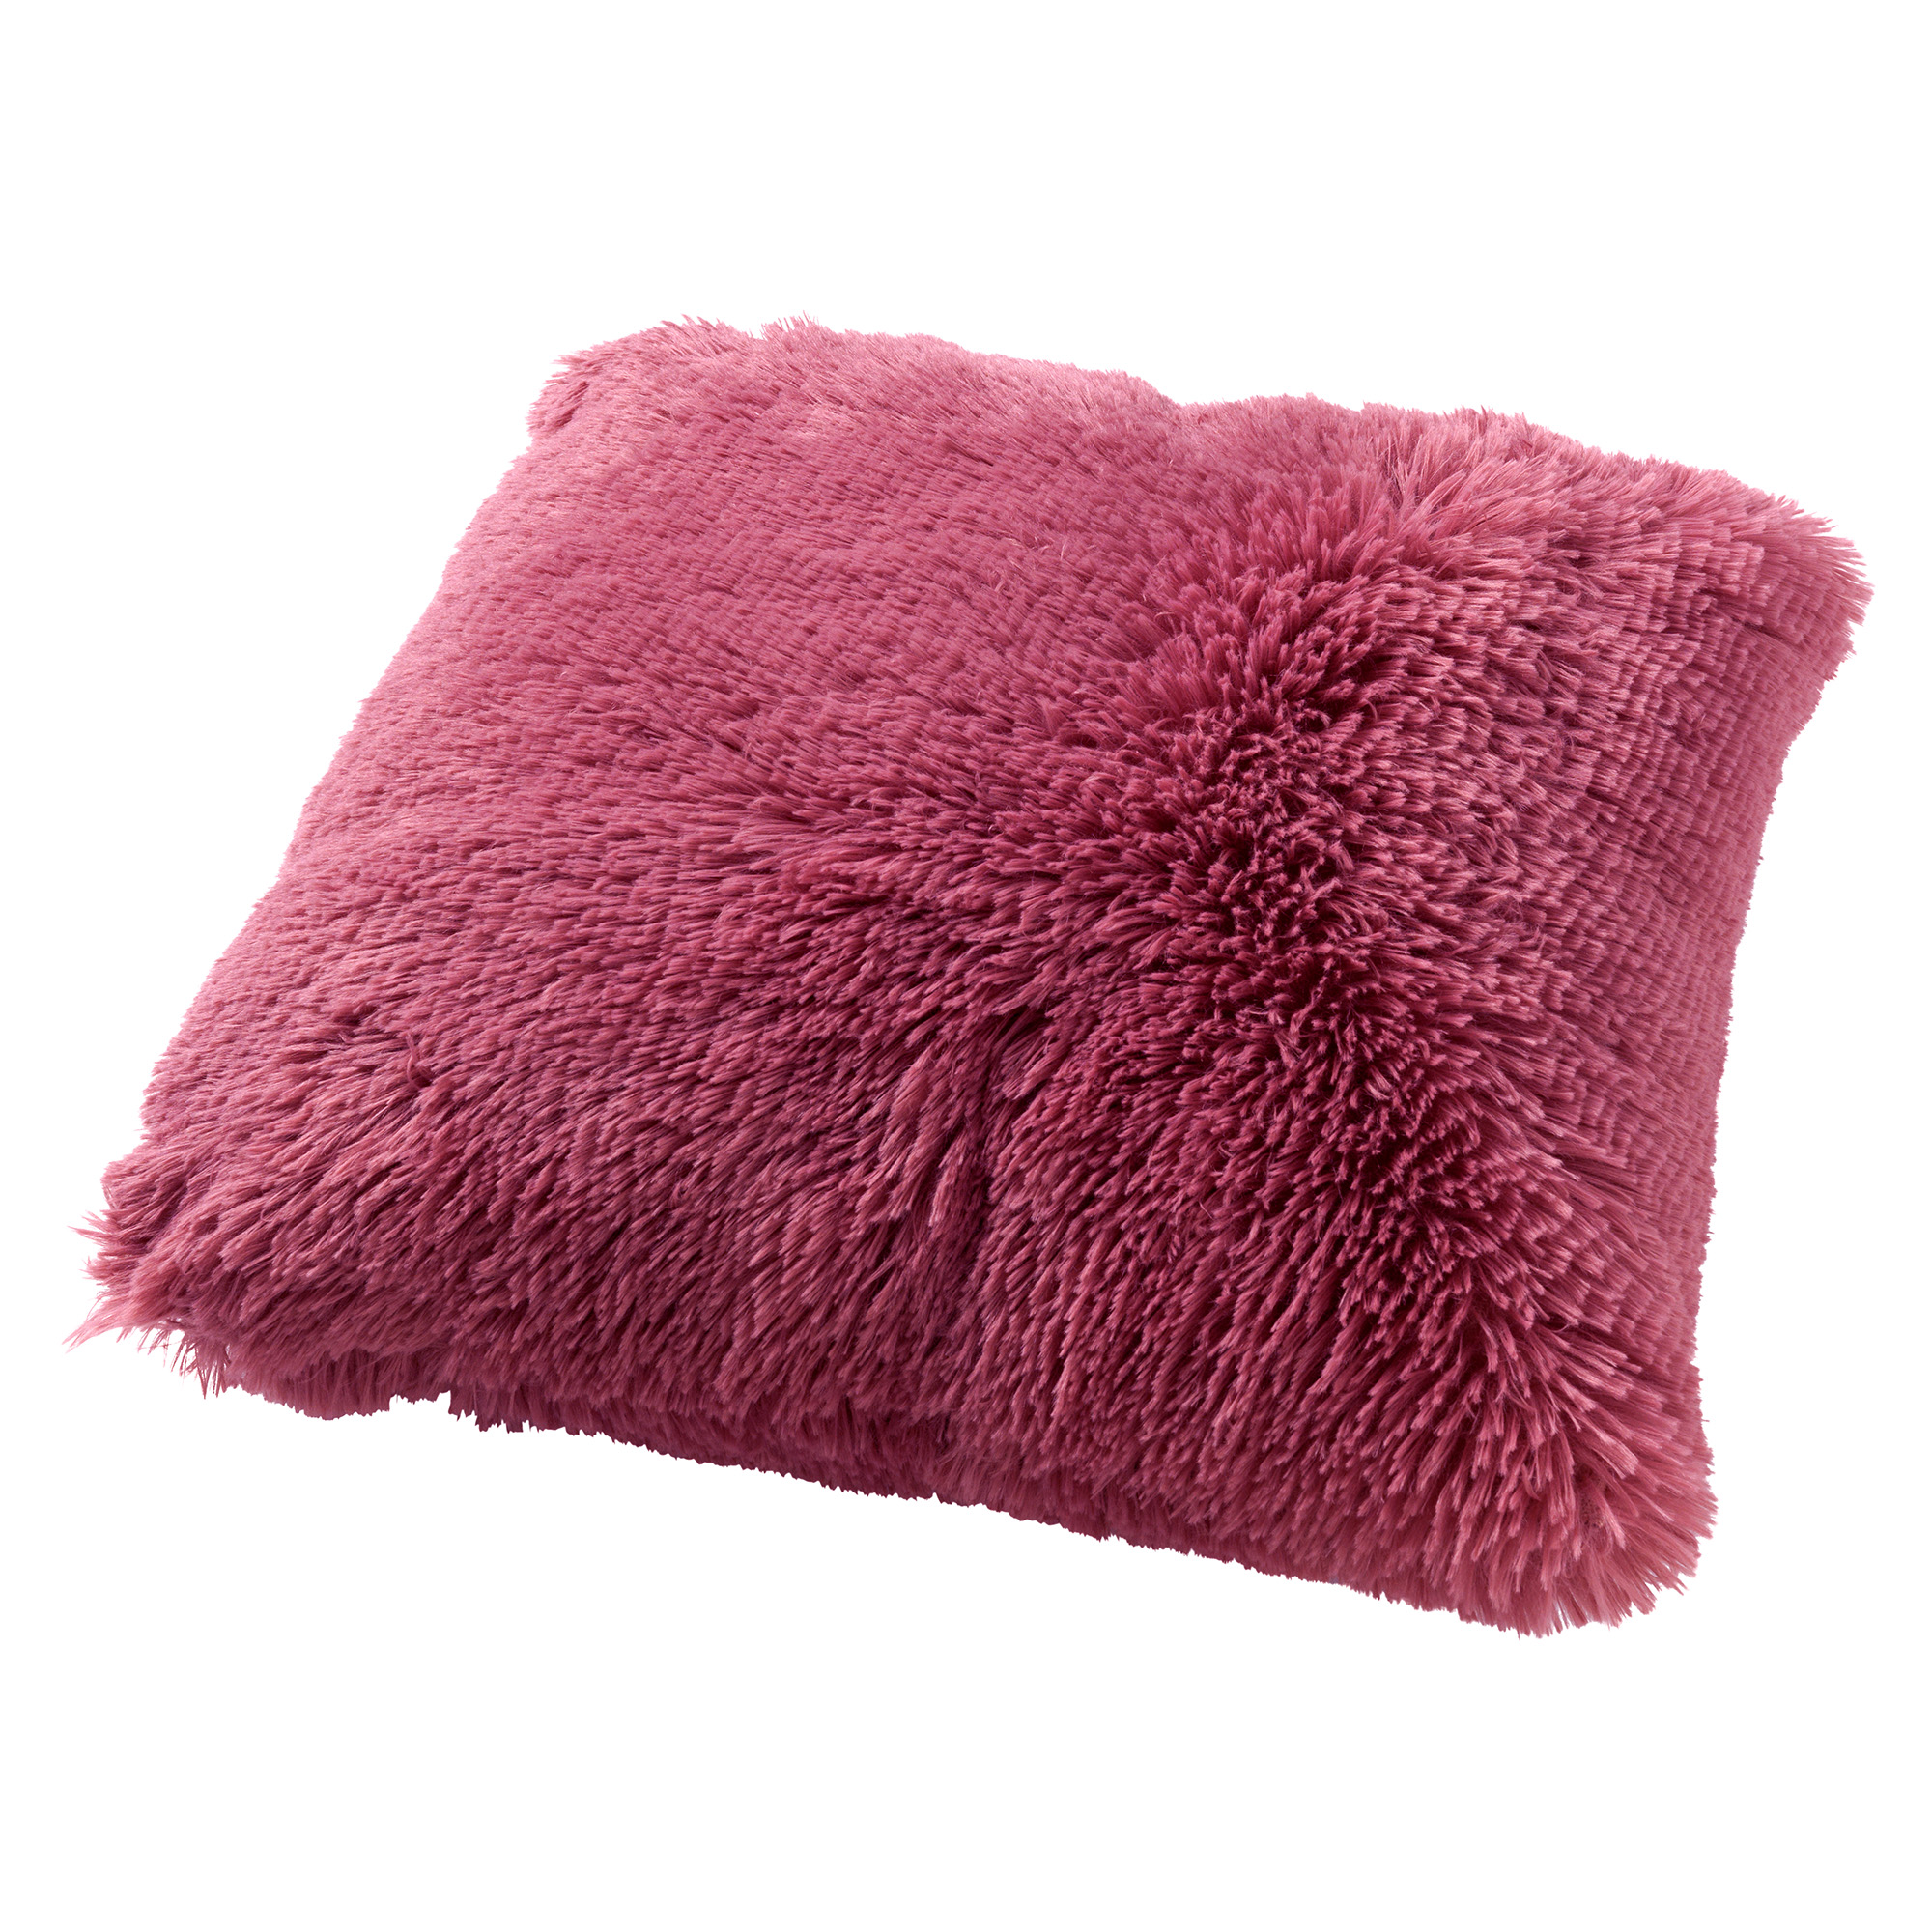 FLUFFY - Sierkussen 45x45 cm - superzacht - effen kleur - Heather Rose - roze